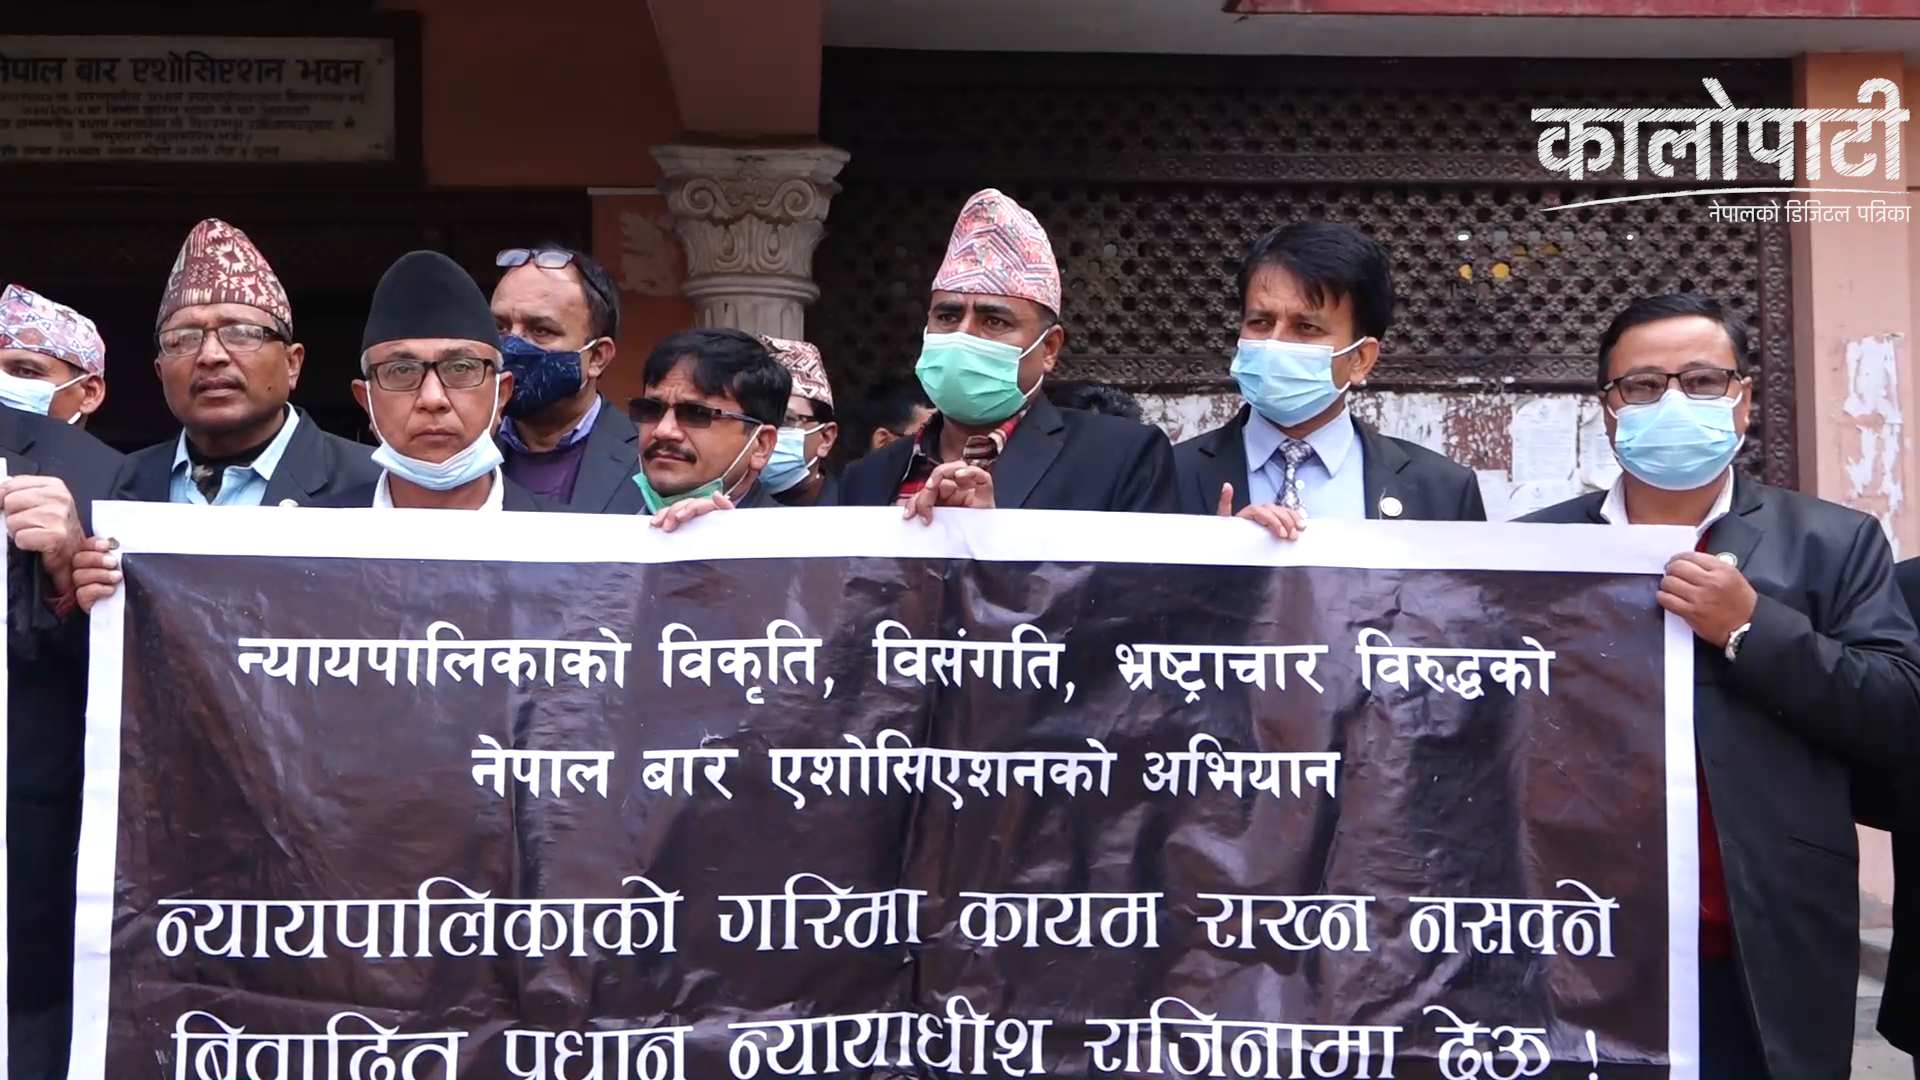 नेपाल बारको अगुवाईमा प्रधानन्यायाधीशविरुद्ध मंगलबार पनि सर्वोच्च अदालतमा विरोध प्रदर्शन